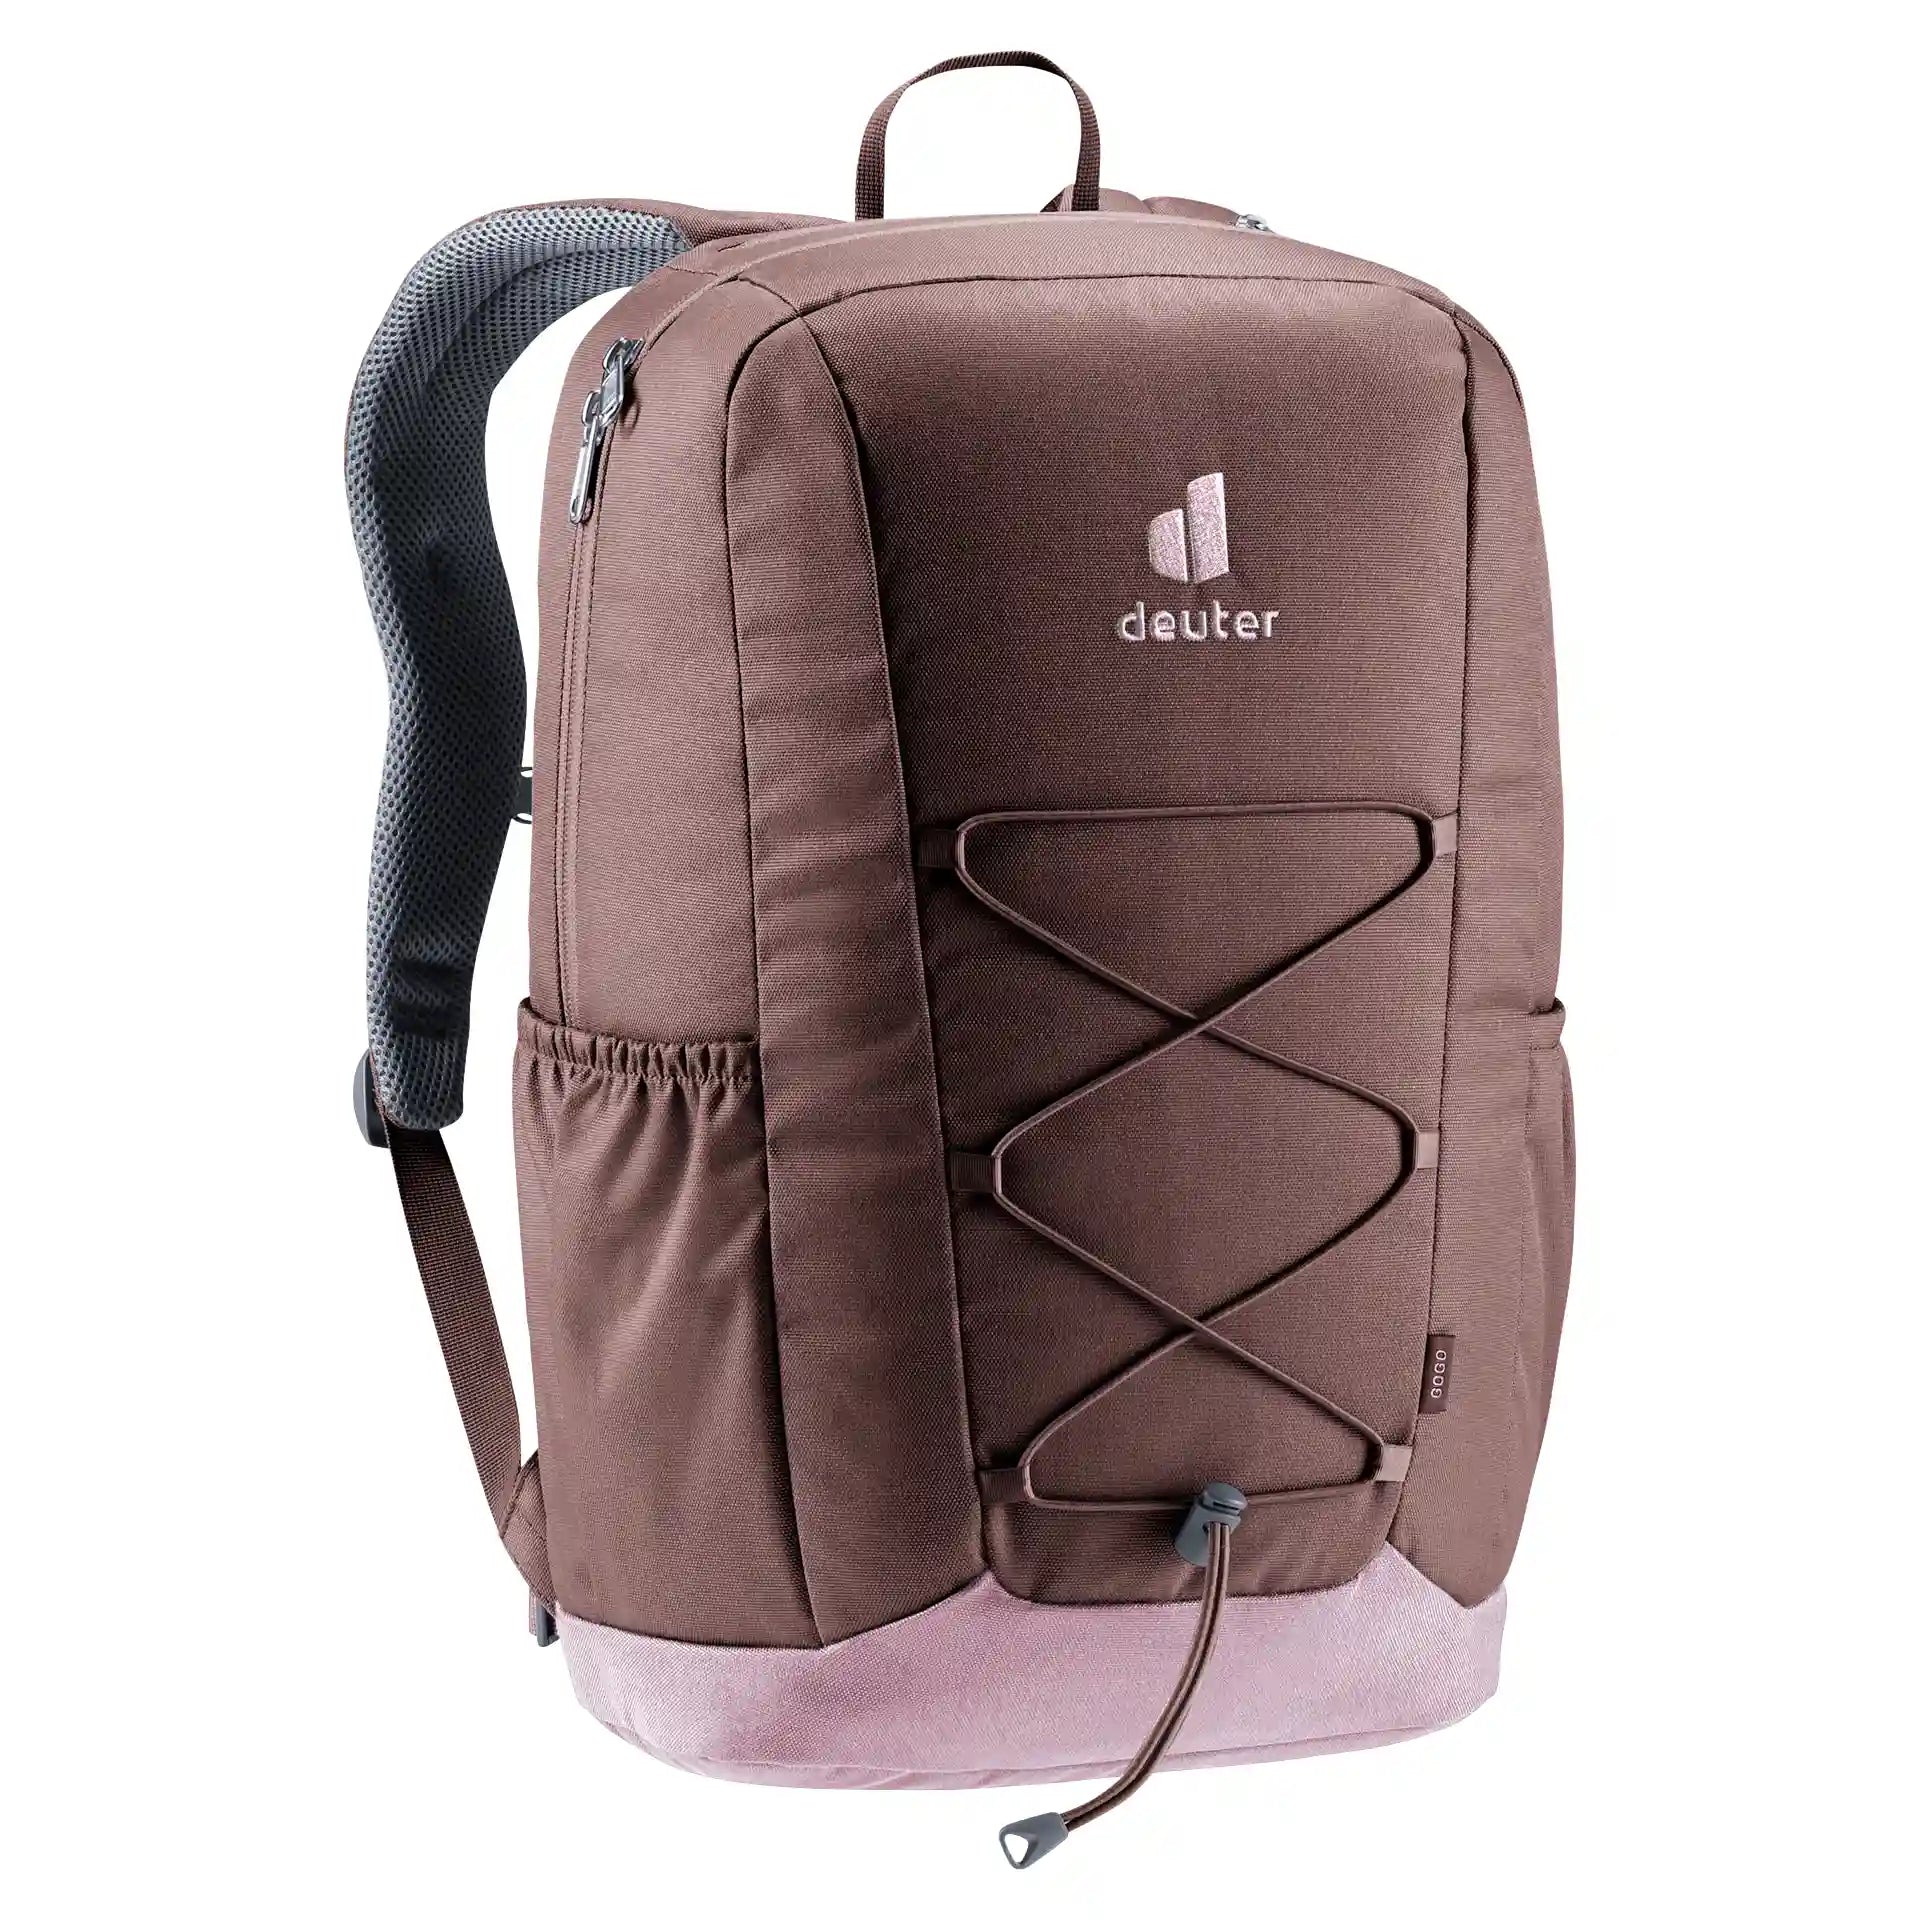 Deuter Gogo Lifestyle Backpack 46 cm - Raisin Grape